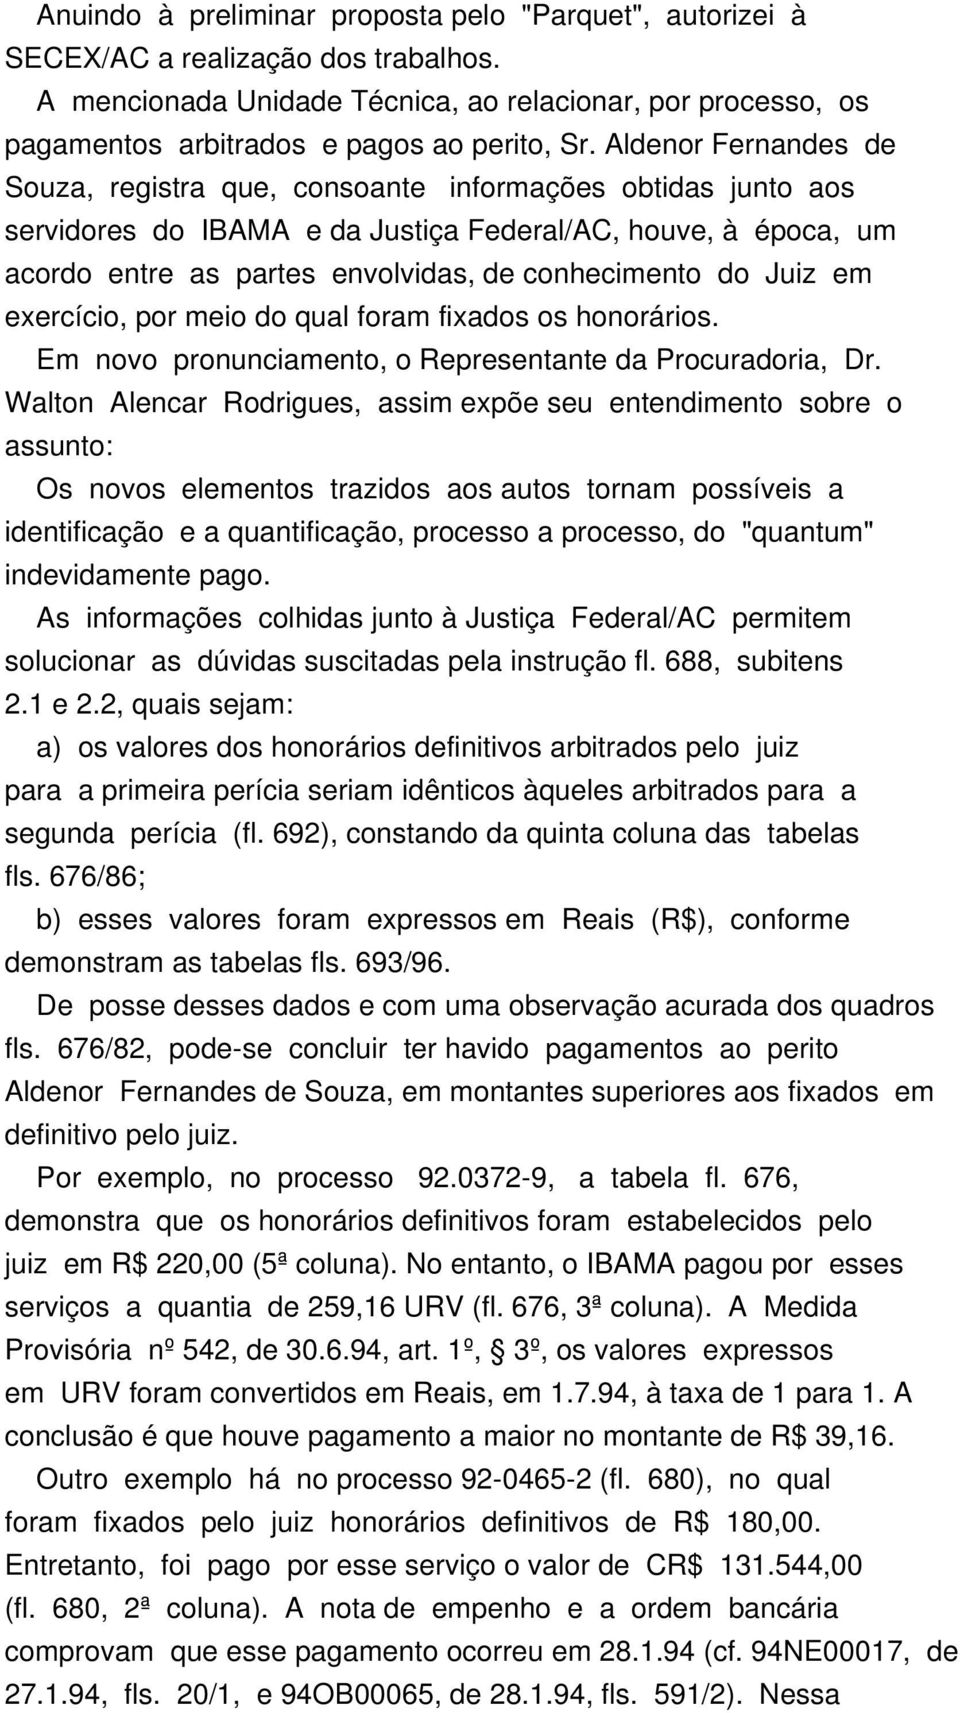 Aldenor Fernandes de Souza, registra que, consoante informações obtidas junto aos servidores do IBAMA e da Justiça Federal/AC, houve, à época, um acordo entre as partes envolvidas, de conhecimento do